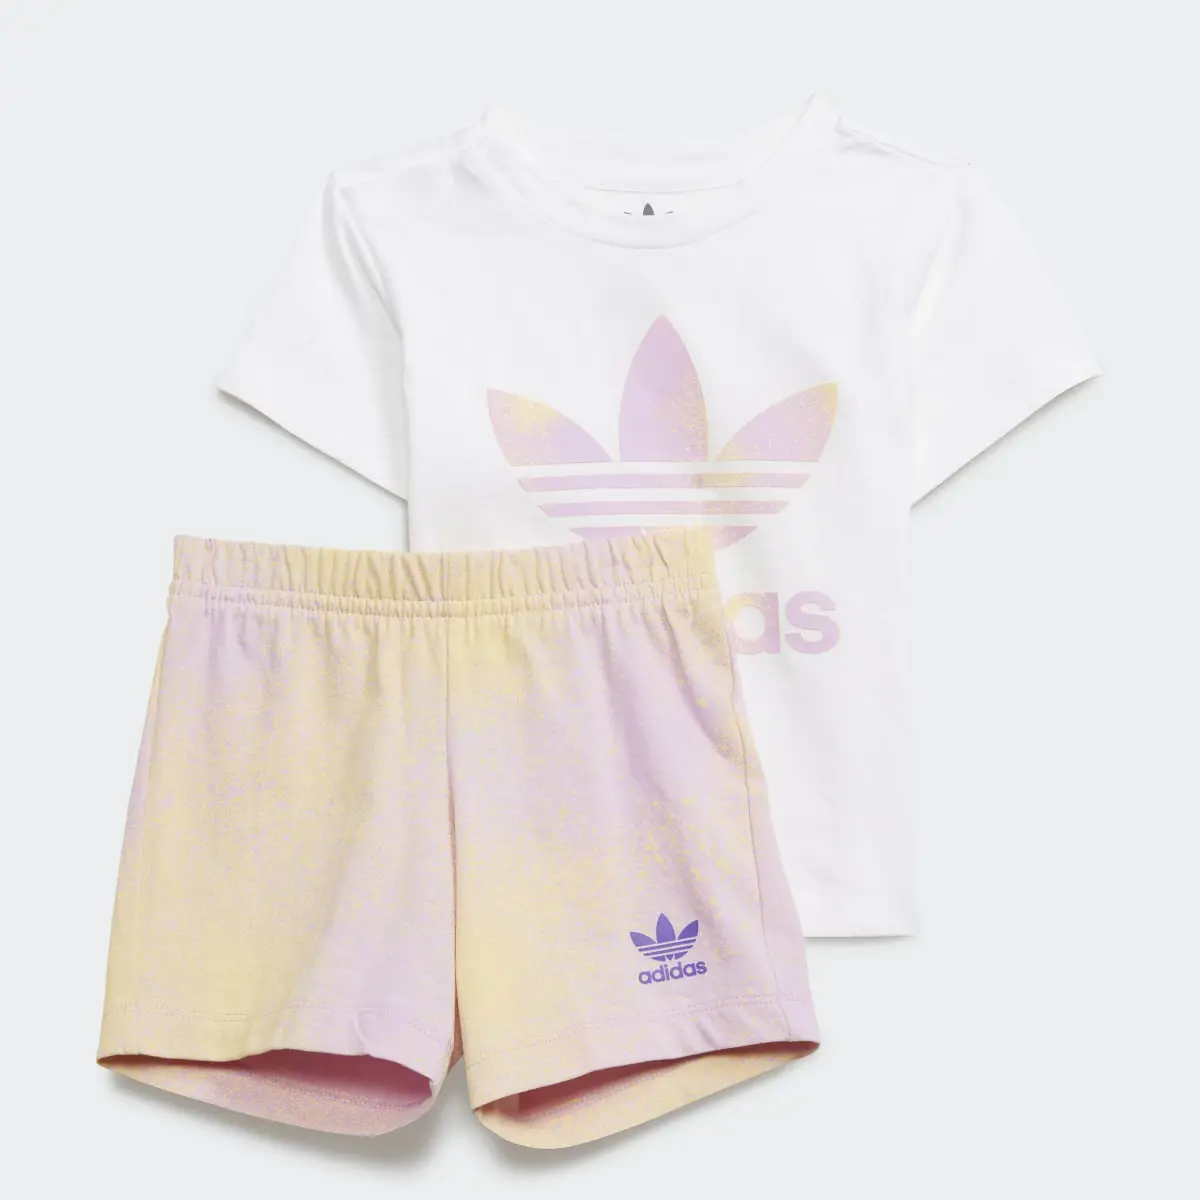 Adidas Graphic Logo Shorts and Tee Set. 1